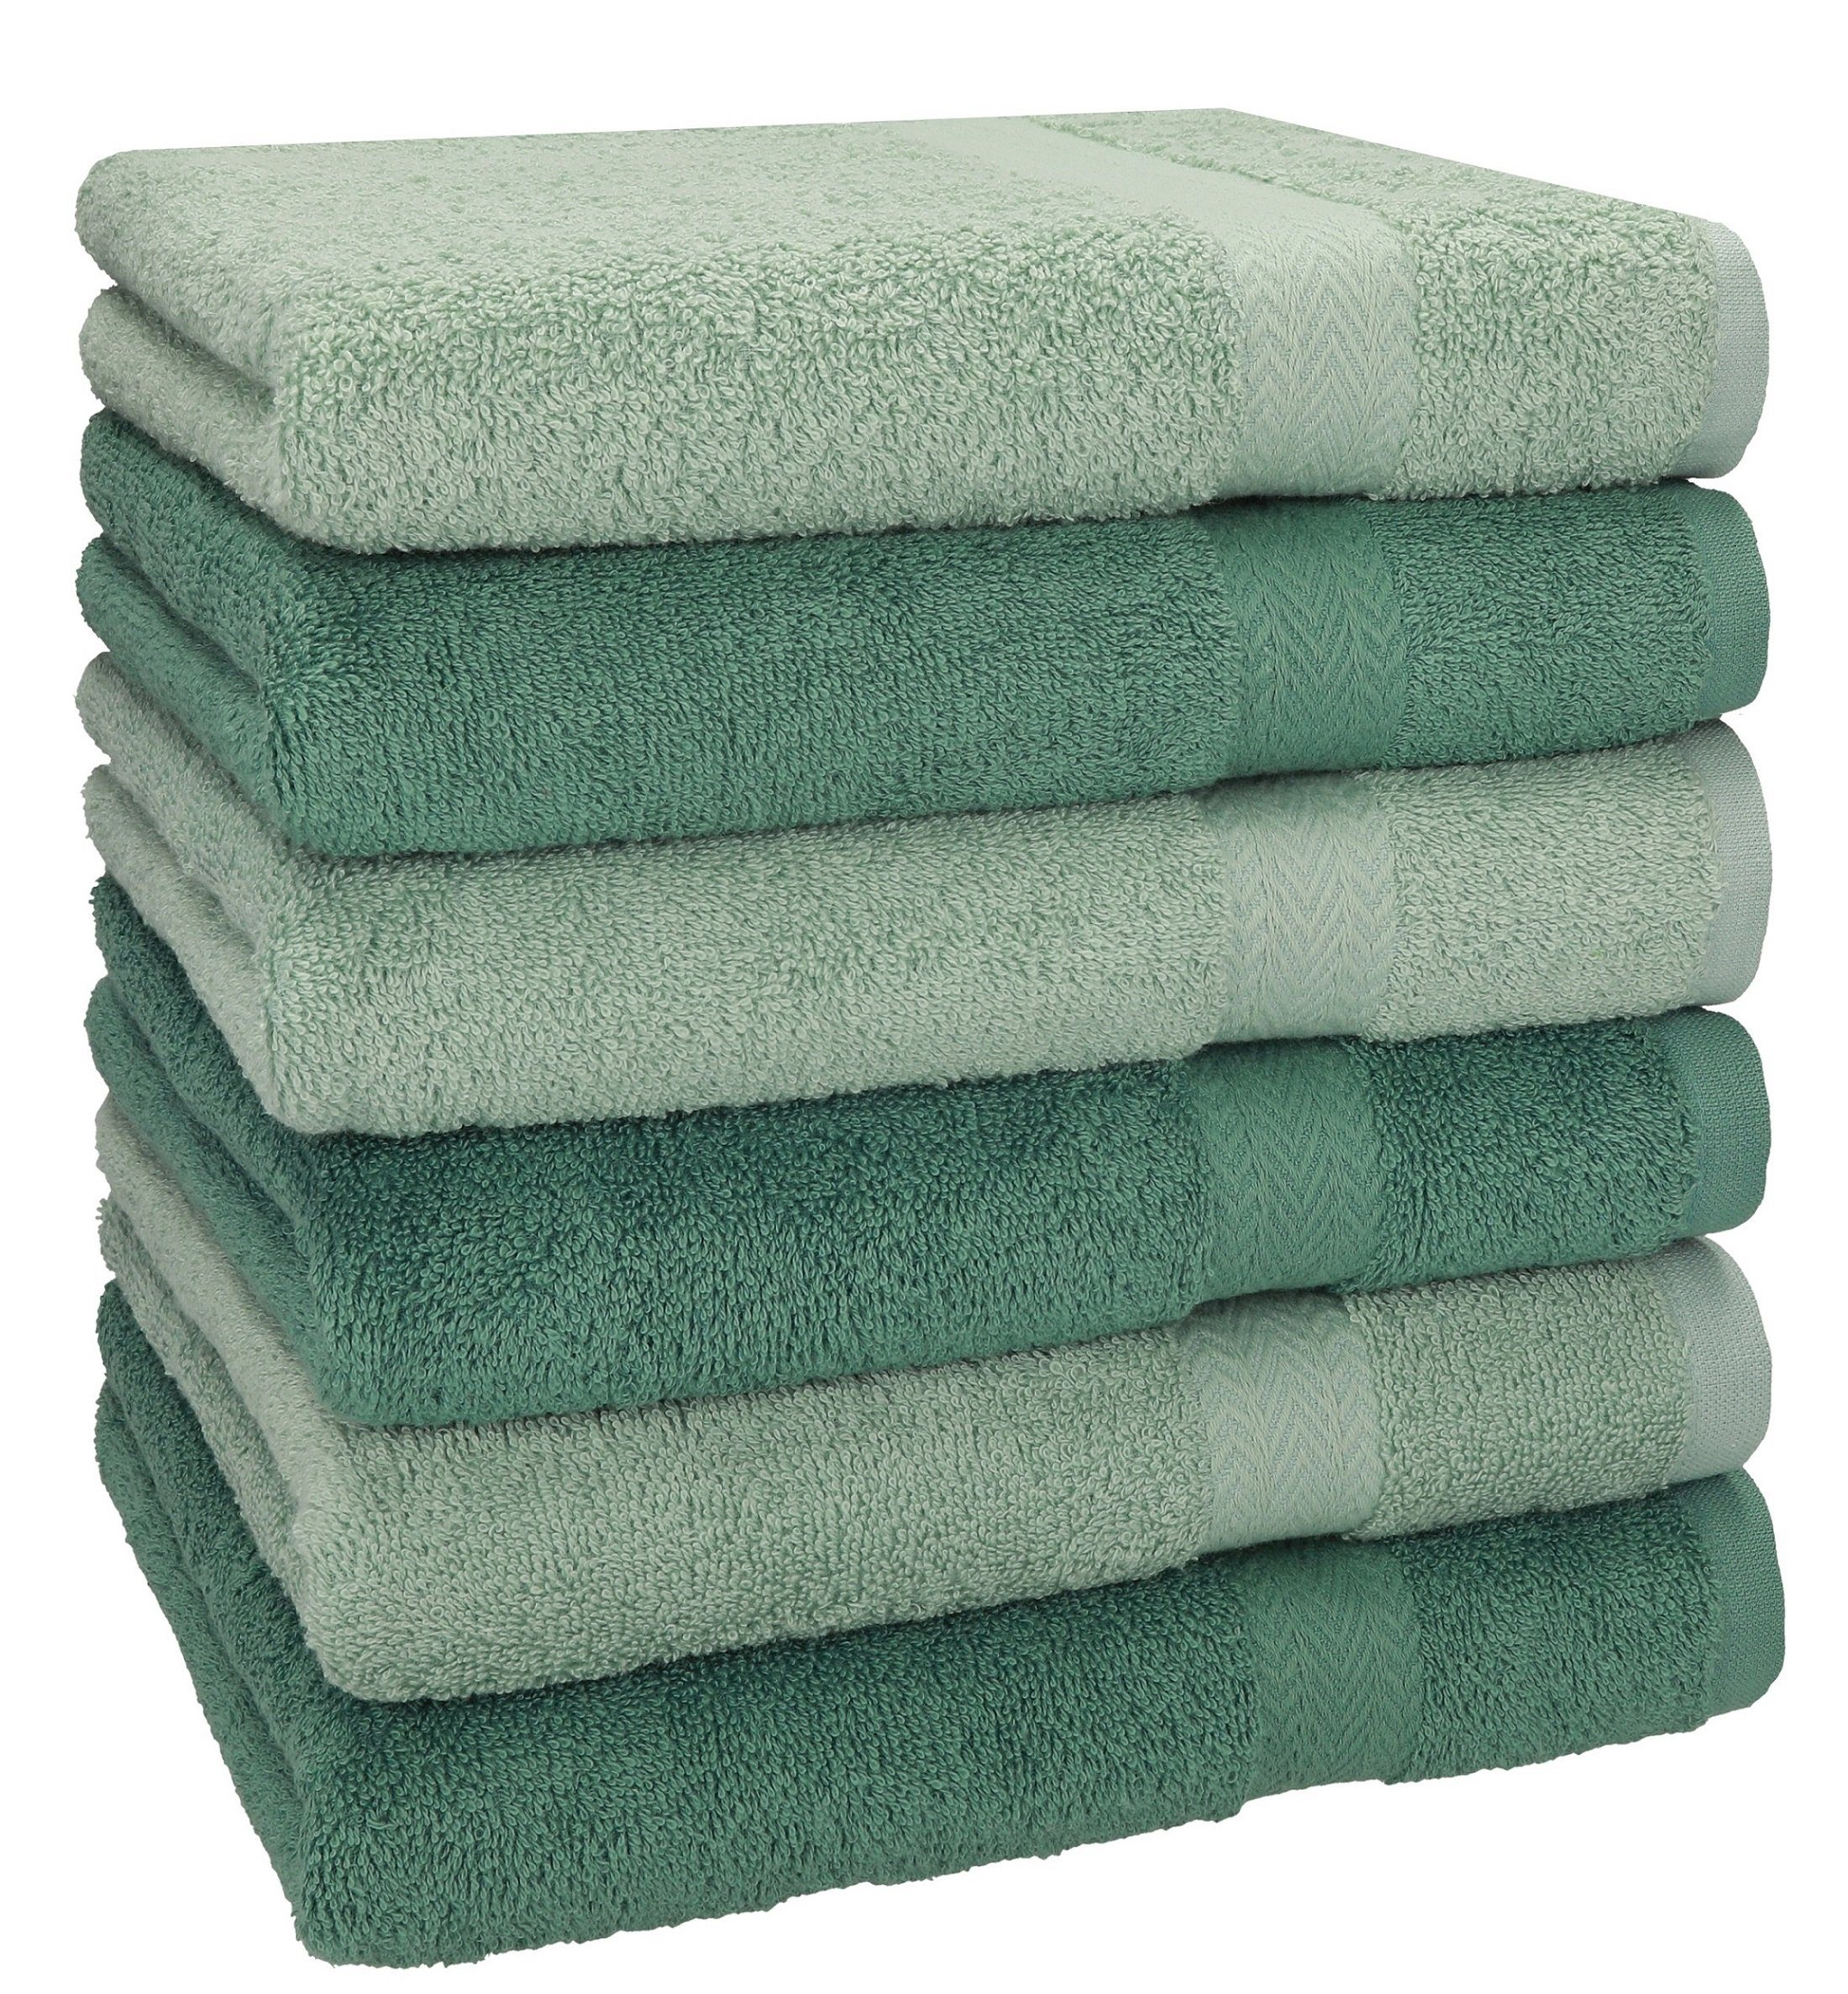 Betz Handtücher 6 Stück Handtücher Größe 50 x 100 cm Premium Handtuch Set 100% Baumwolle Farbe heugrün/tannengrün, 100% Baumwolle (6-St)